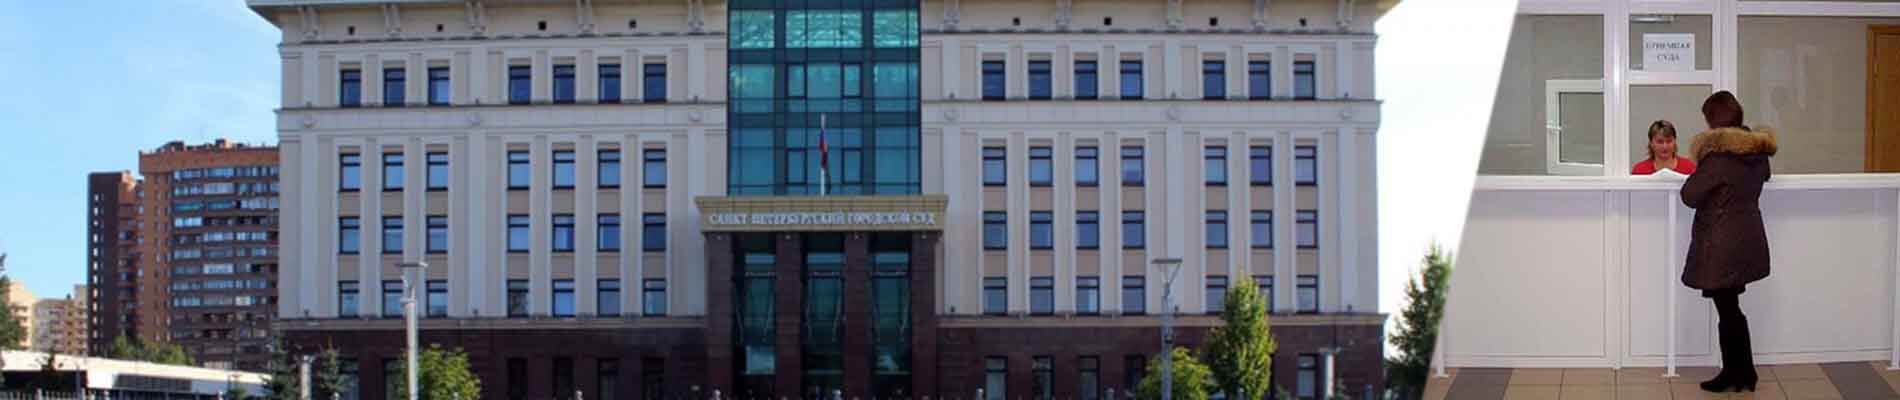 Подача иска в суд помощь юриста СПб